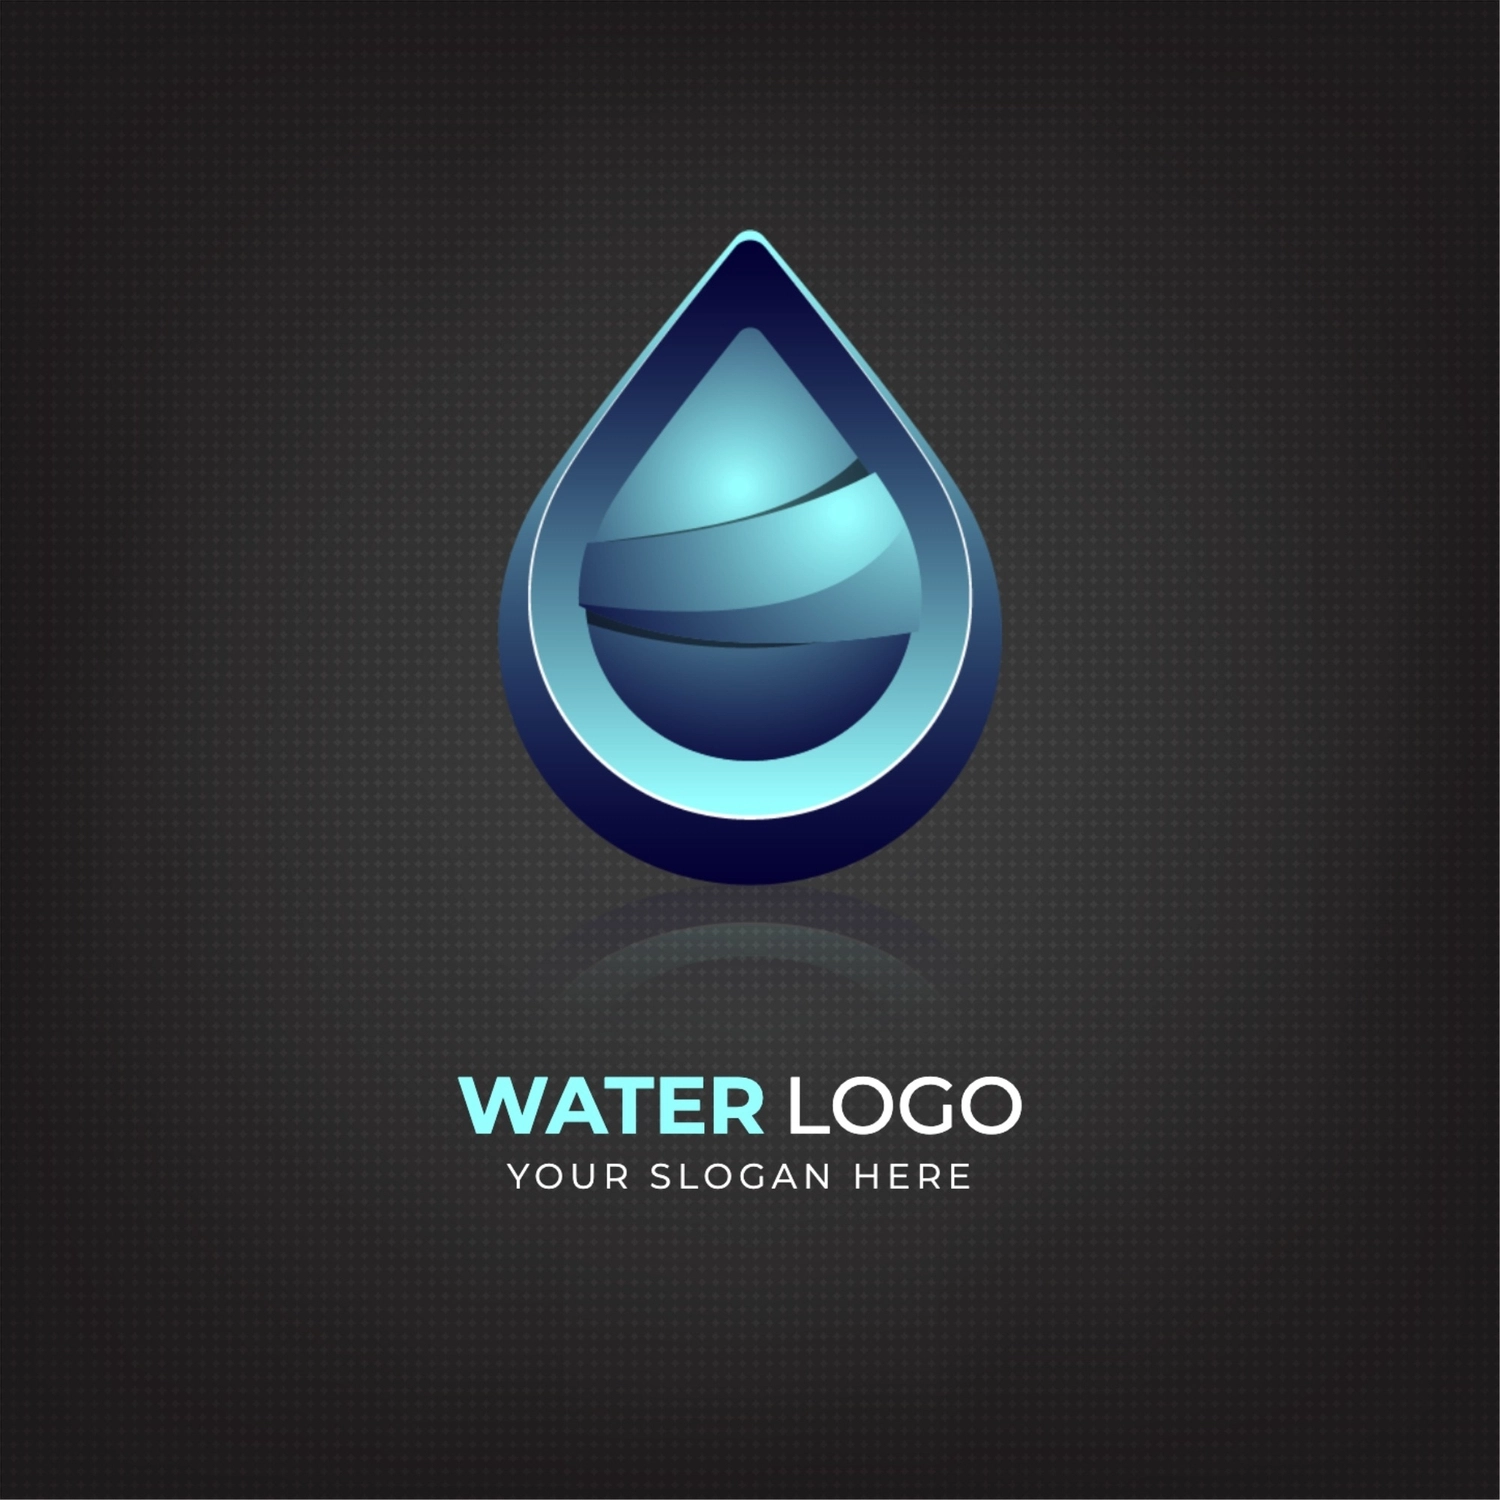 水滴のロゴ, 緑, 作成, デザイン, ロゴテンプレート